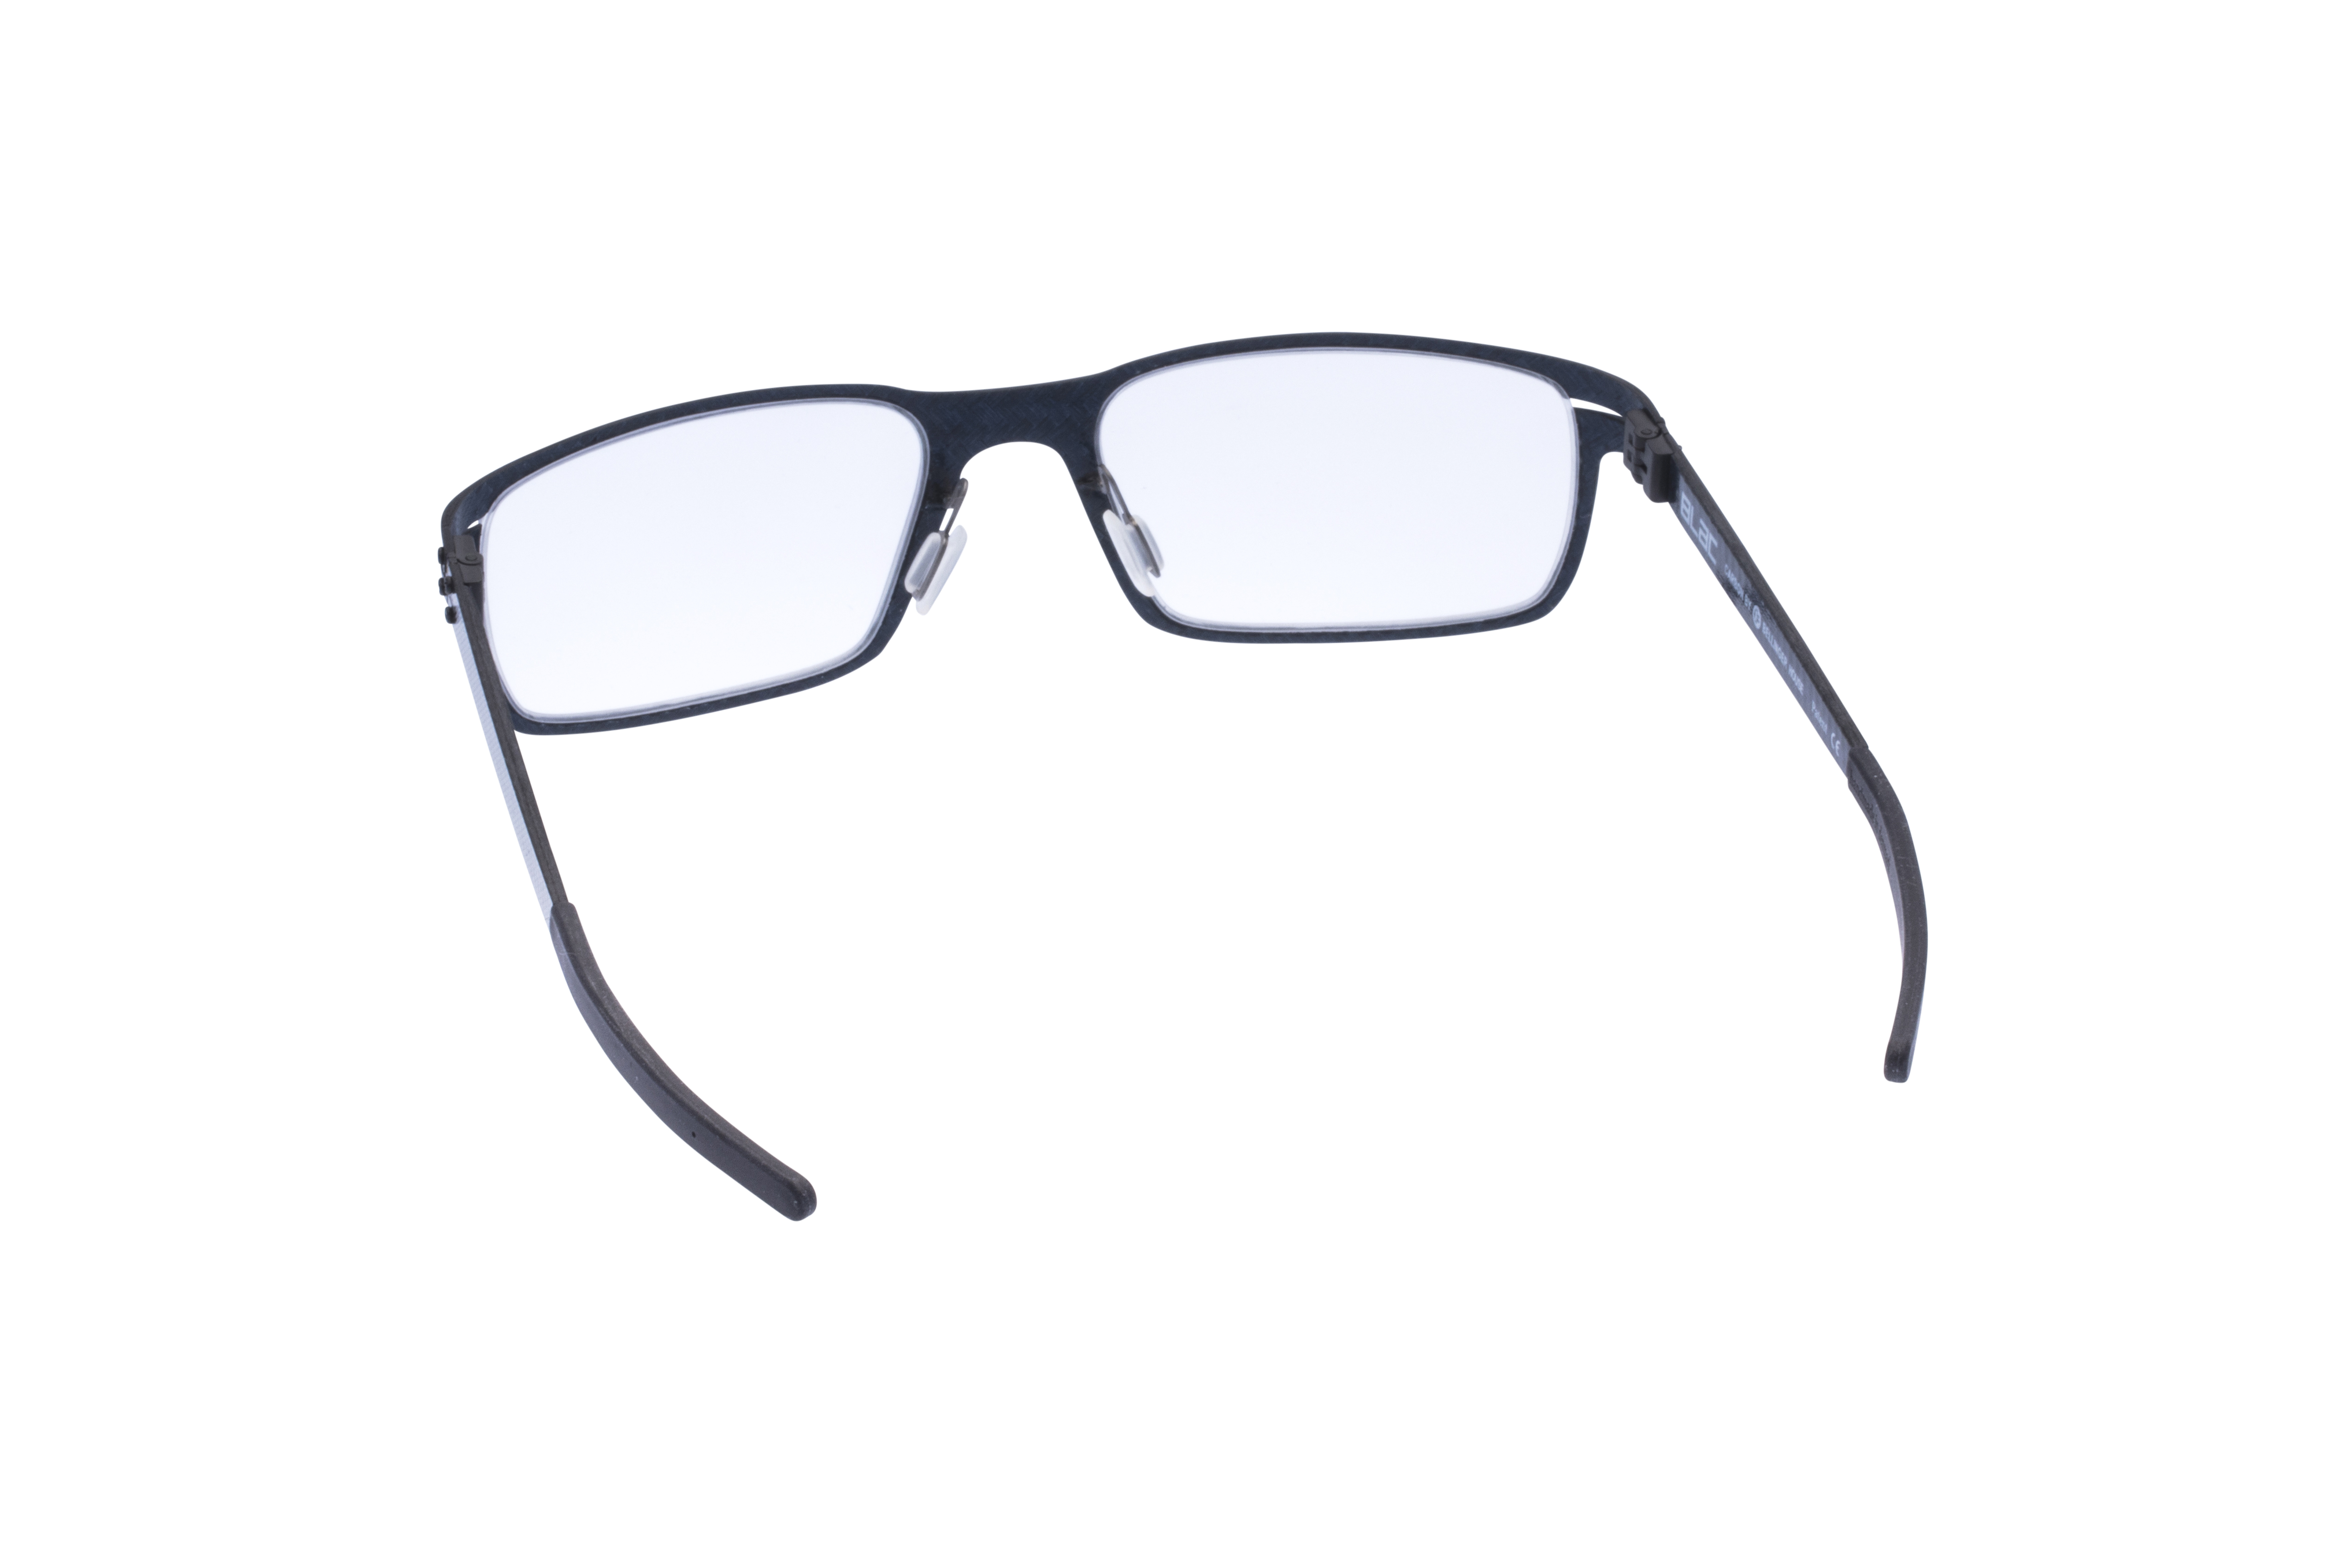 360 Grad Ansicht 13 Blac Dunes, Brille auf Weiß - Fassung bei KUNK